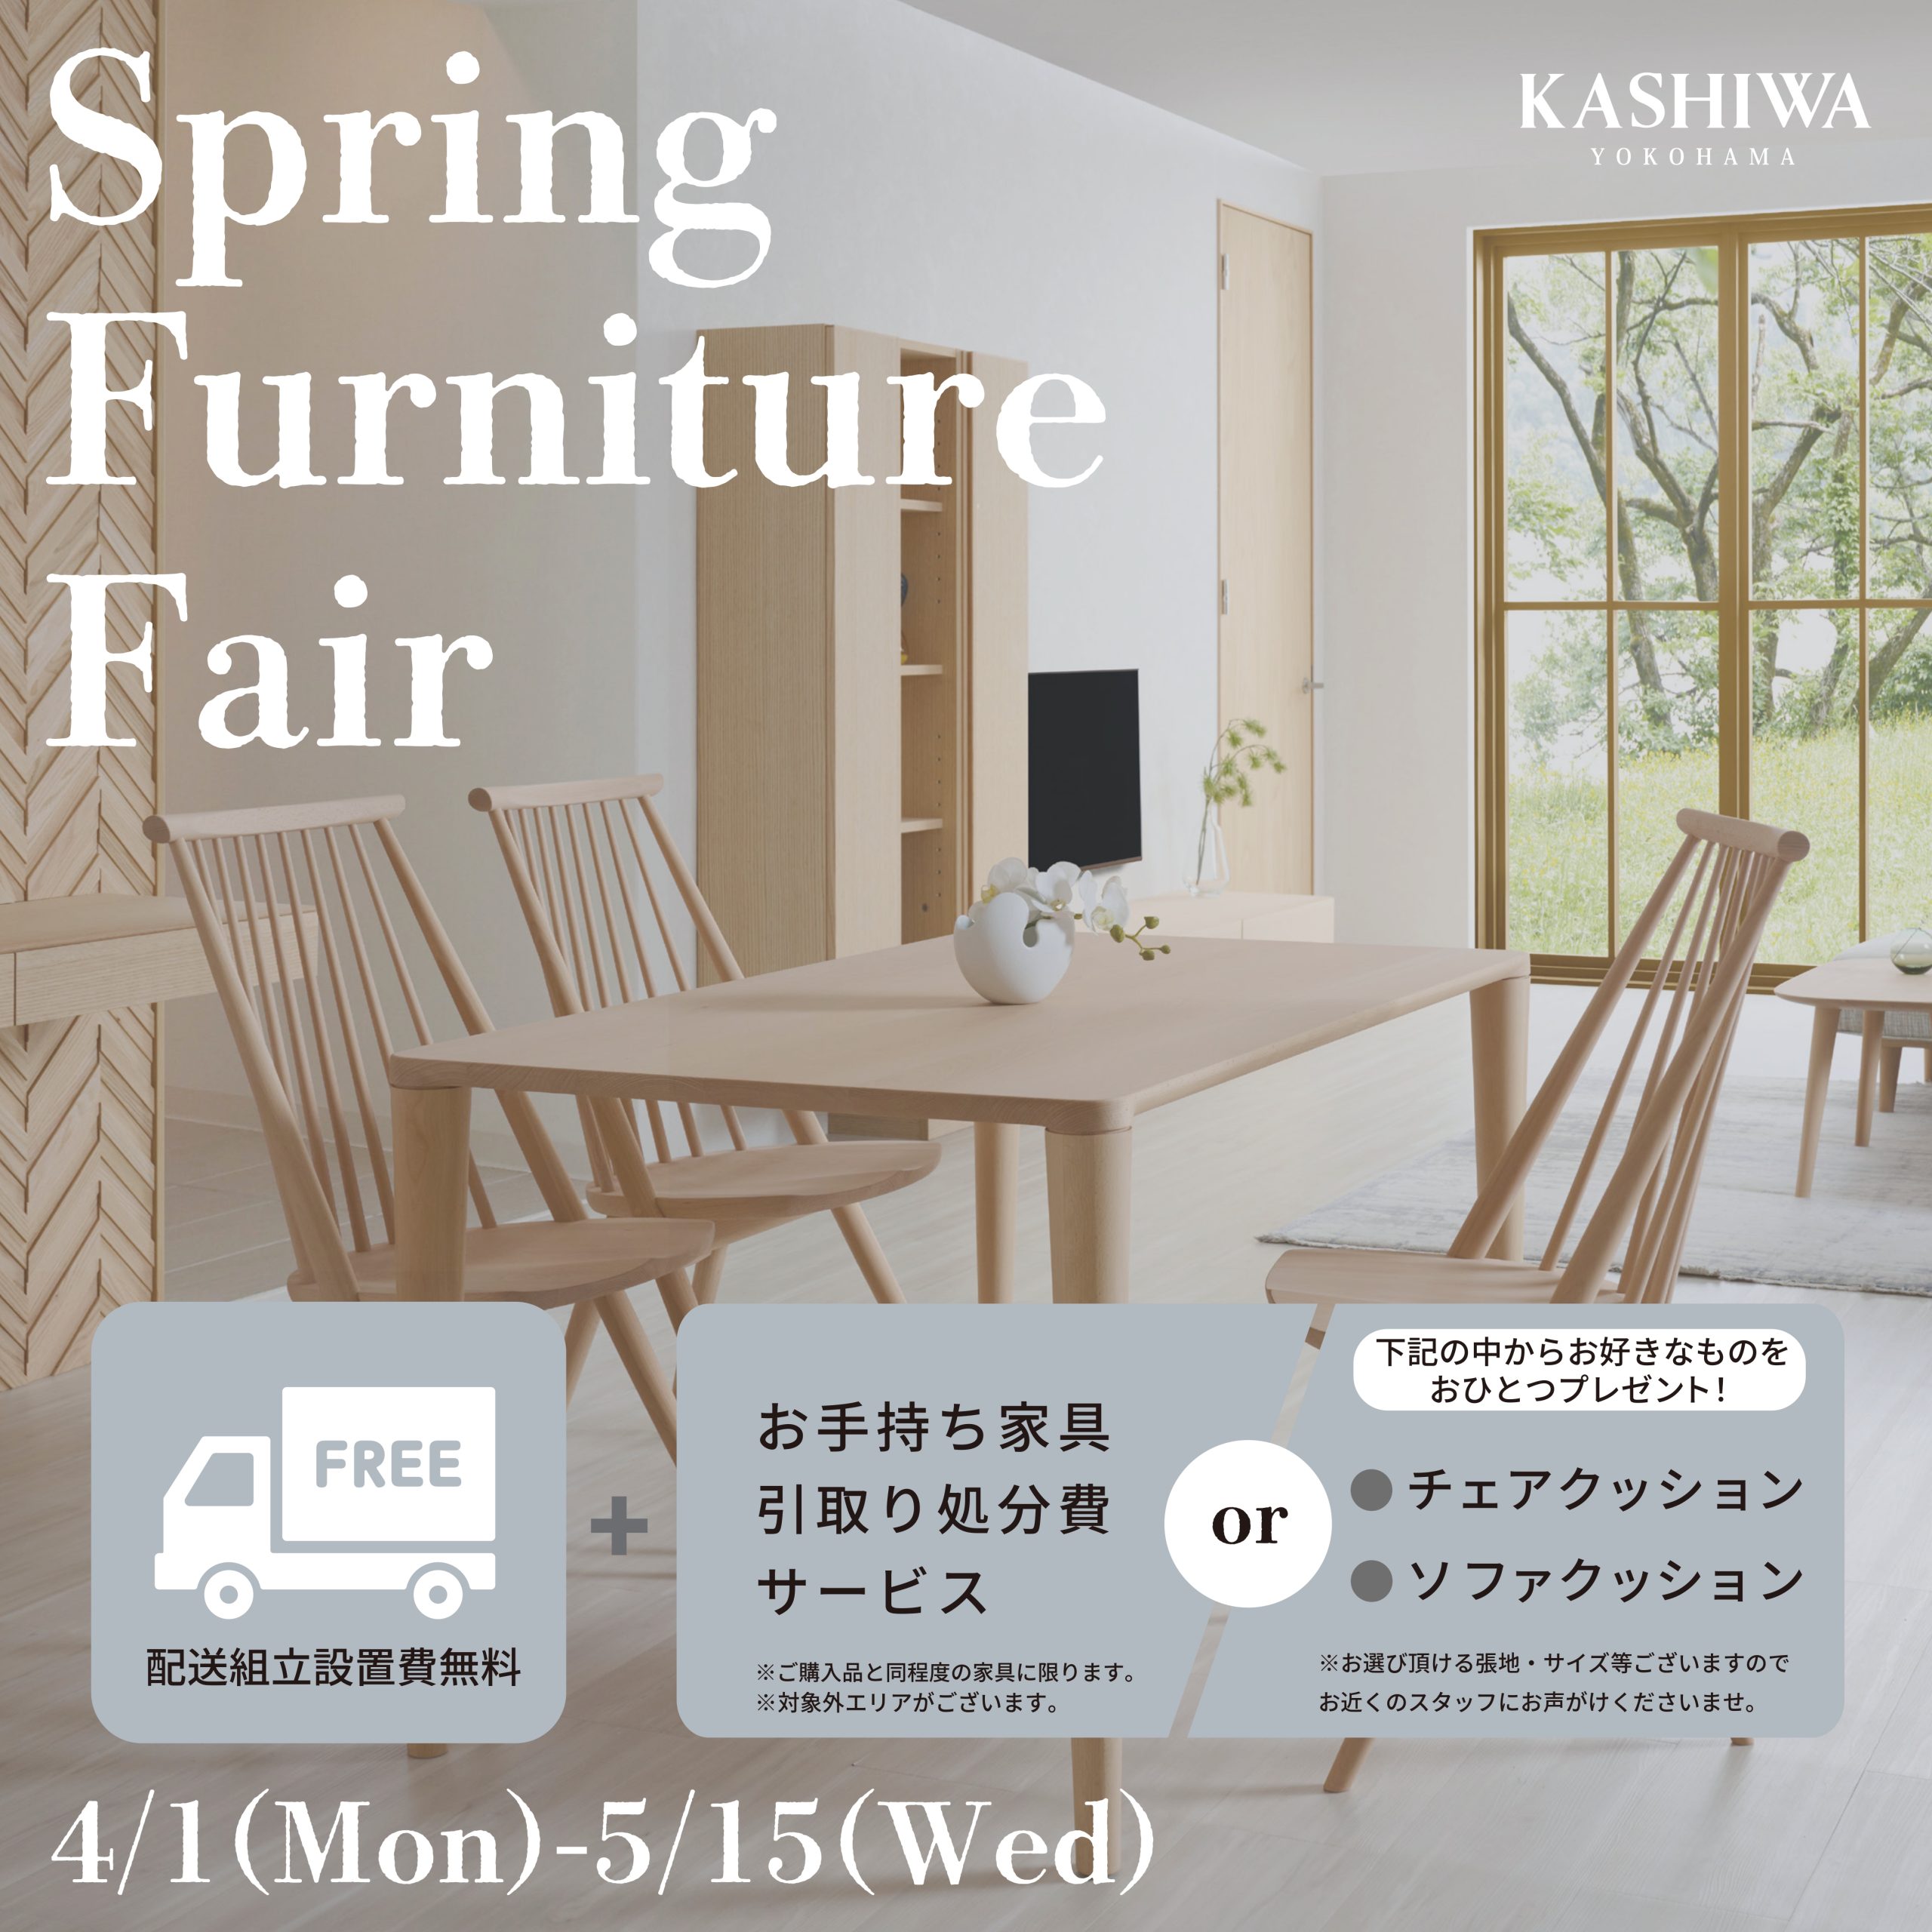 Spring Furniture Fair